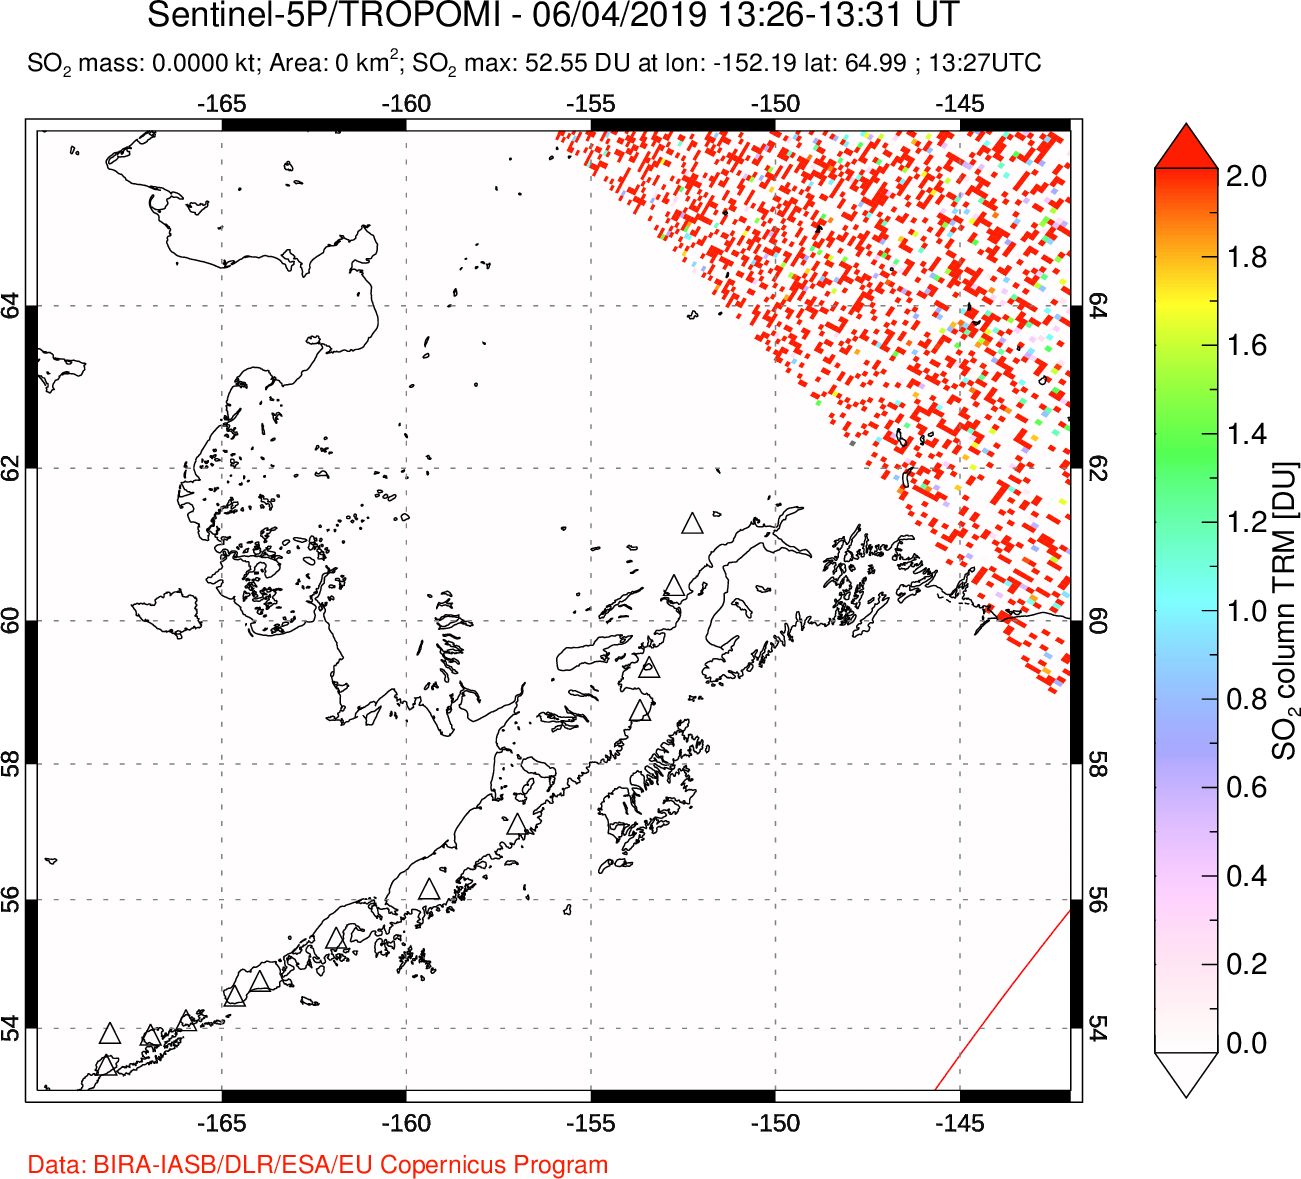 A sulfur dioxide image over Alaska, USA on Jun 04, 2019.